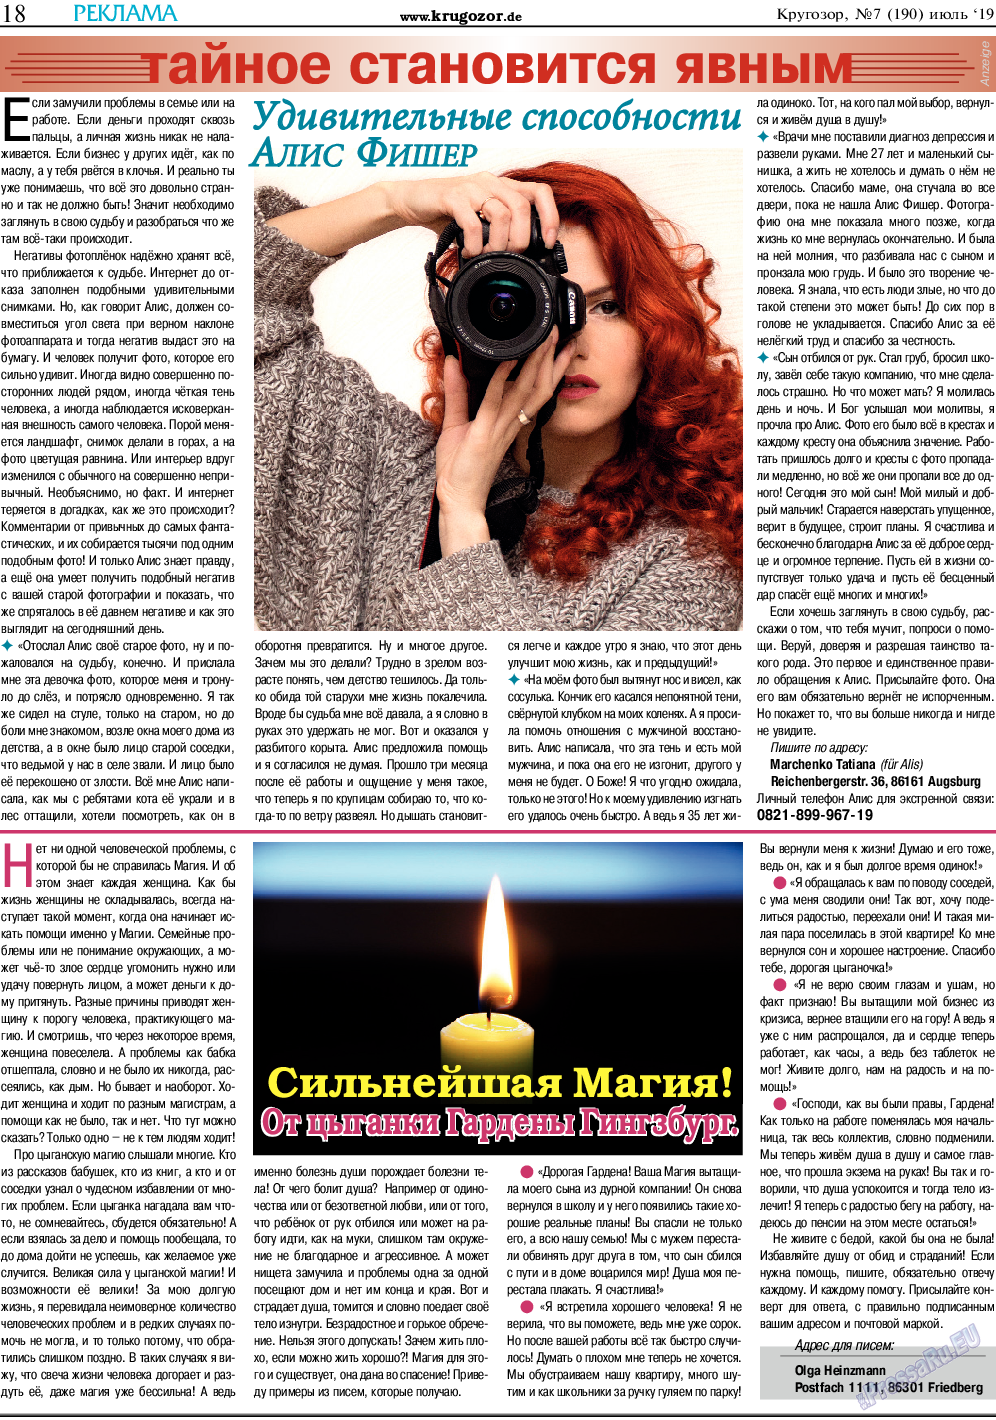 Кругозор (газета). 2019 год, номер 7, стр. 18